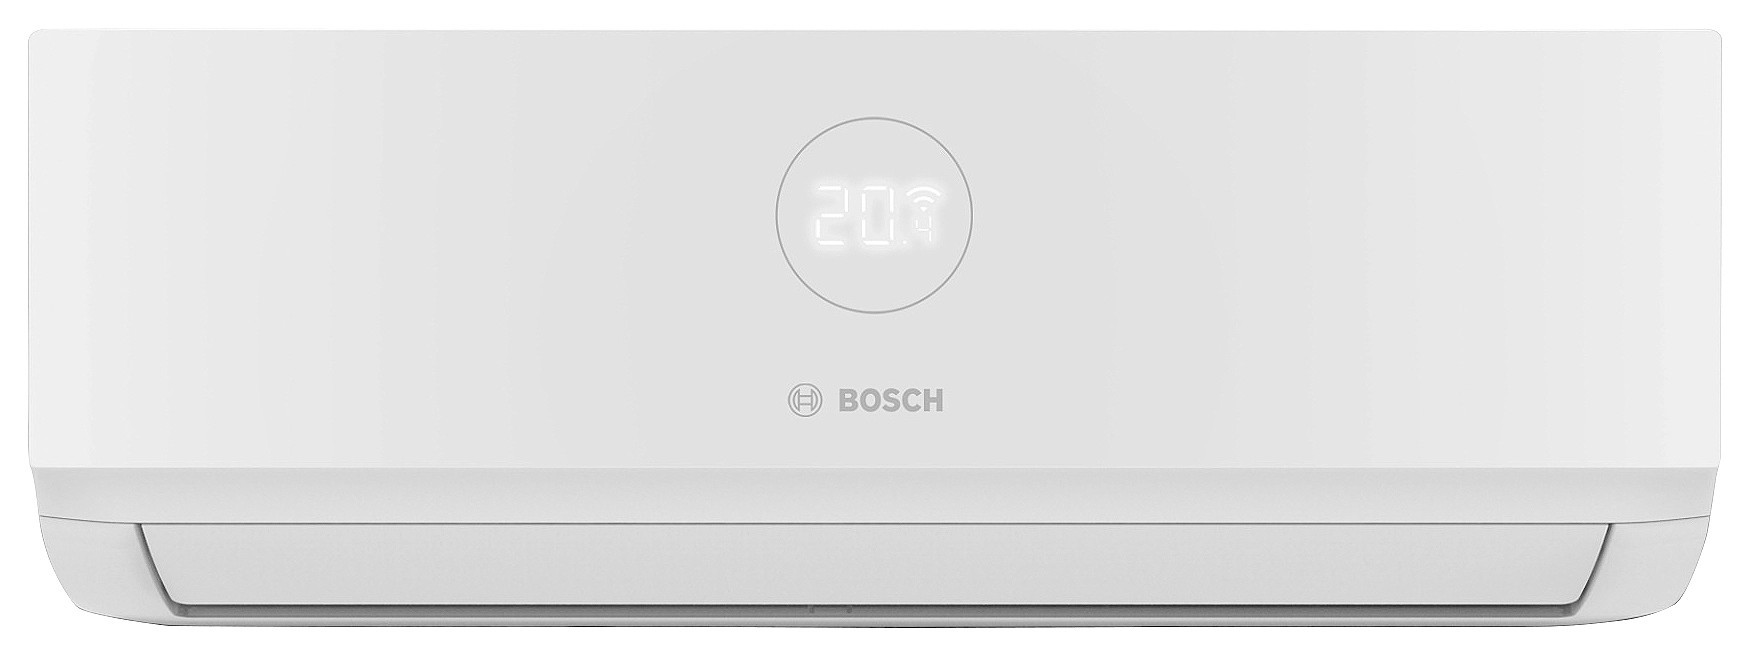 Ціна внутрішній блок мультиспліт-системи Bosch CL3000i W 20E 2,0 кВт в Києві